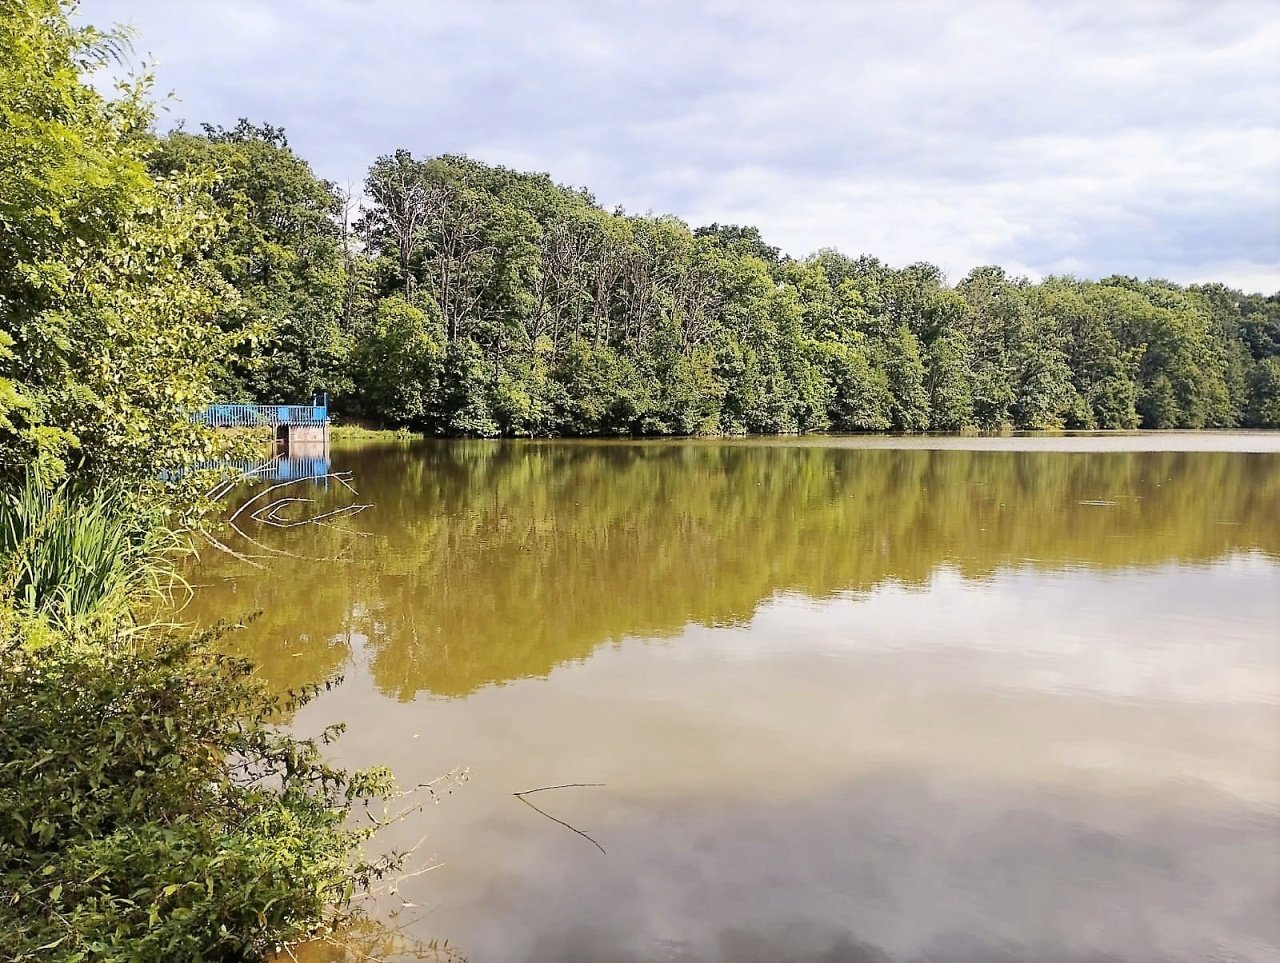 Pražští rybáři otevírají nový rybník pro sportovní rybolov